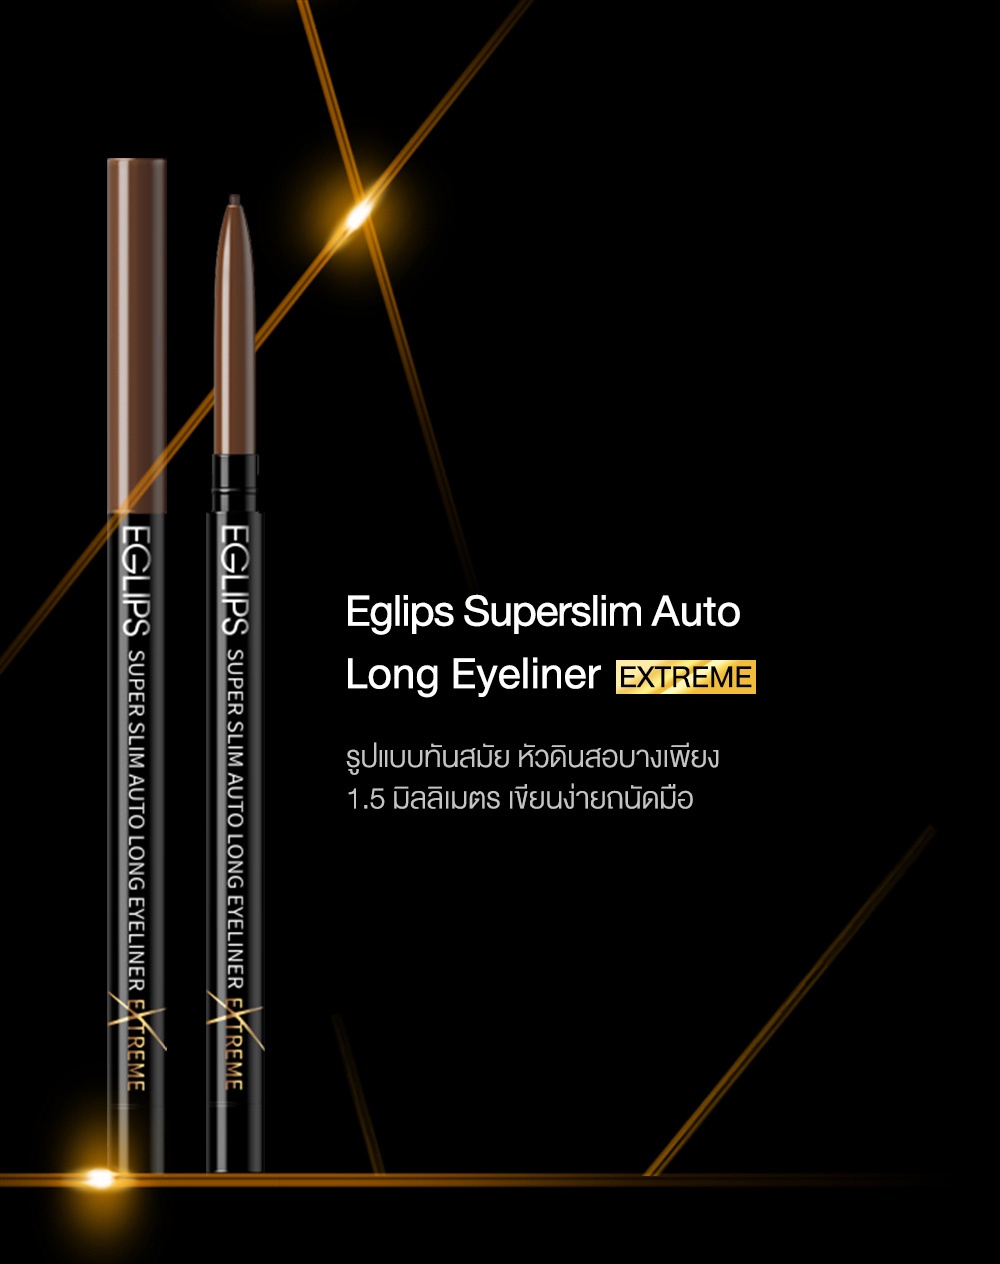 รูปภาพเพิ่มเติมของ Eglips Super Slim Auto Long Eyeliner Extreme Edition อีกลิปส์ (อายไลเนอร์เส้นบาง)